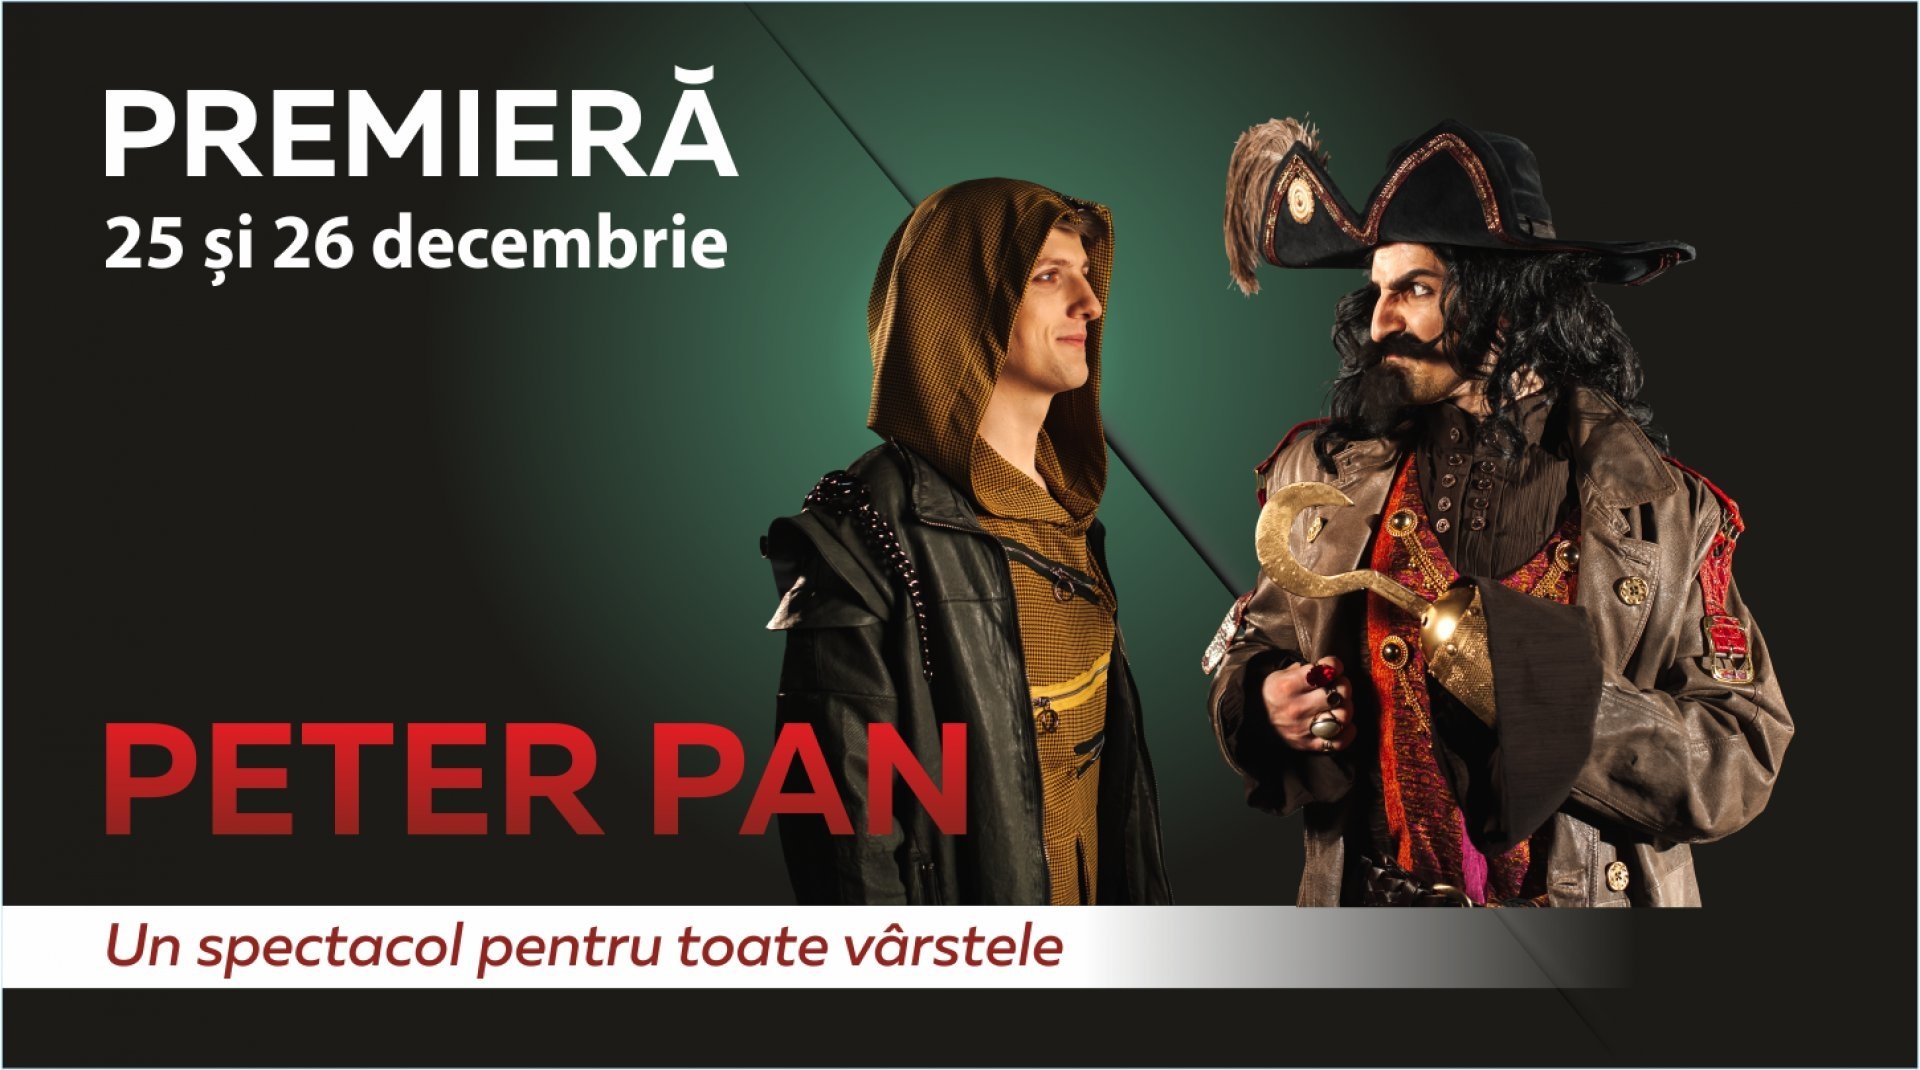 PETER PAN - Premieră